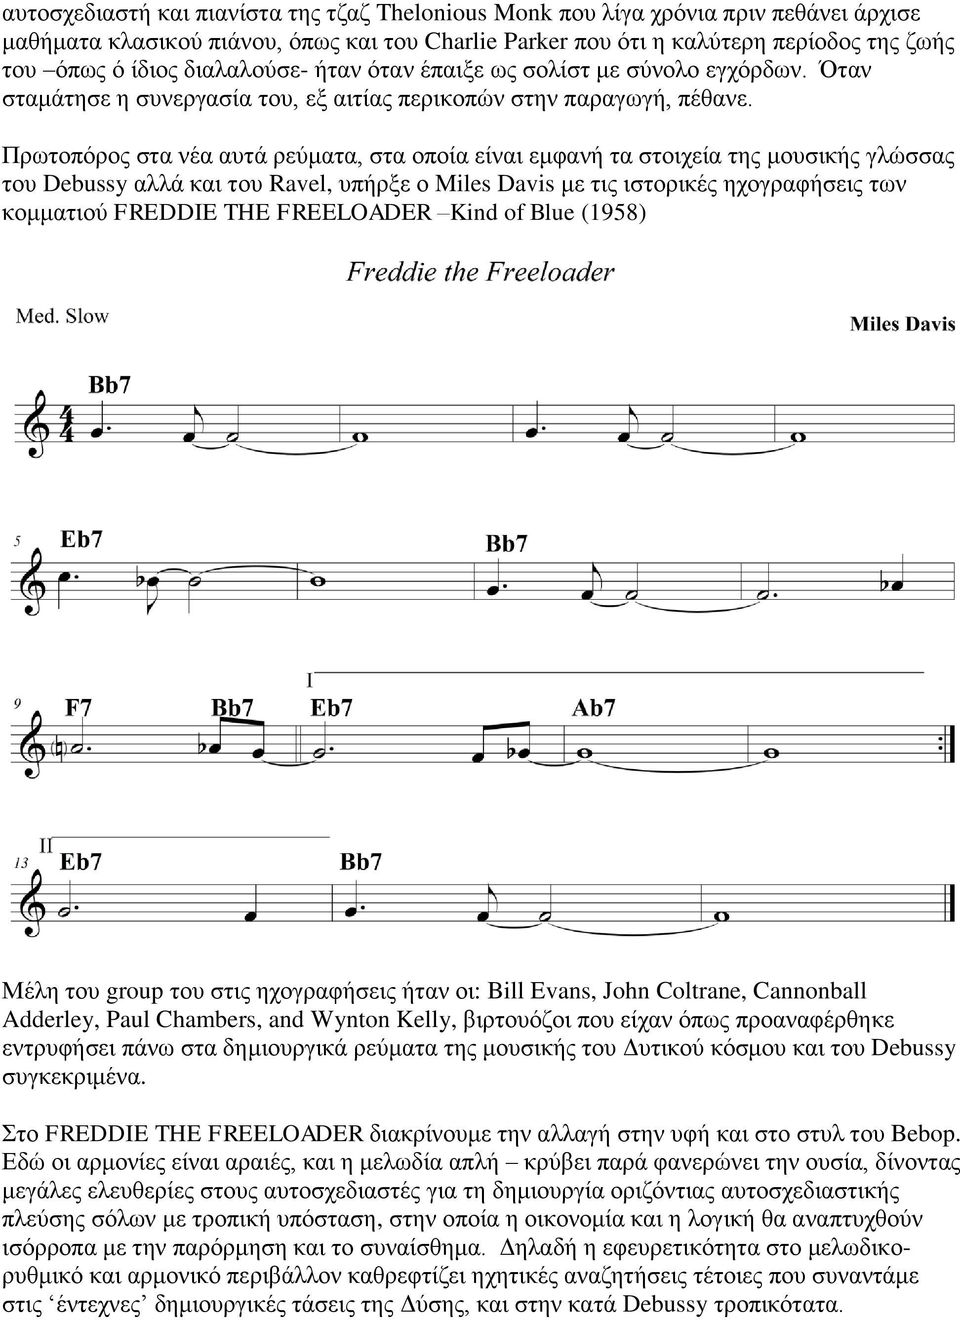 Πρωτοπόρος στα νέα αυτά ρεύματα, στα οποία είναι εμφανή τα στοιχεία της μουσικής γλώσσας του Debussy αλλά και του Ravel, υπήρξε ο Miles Davis με τις ιστορικές ηχογραφήσεις των κομματιού FREDDIE THE